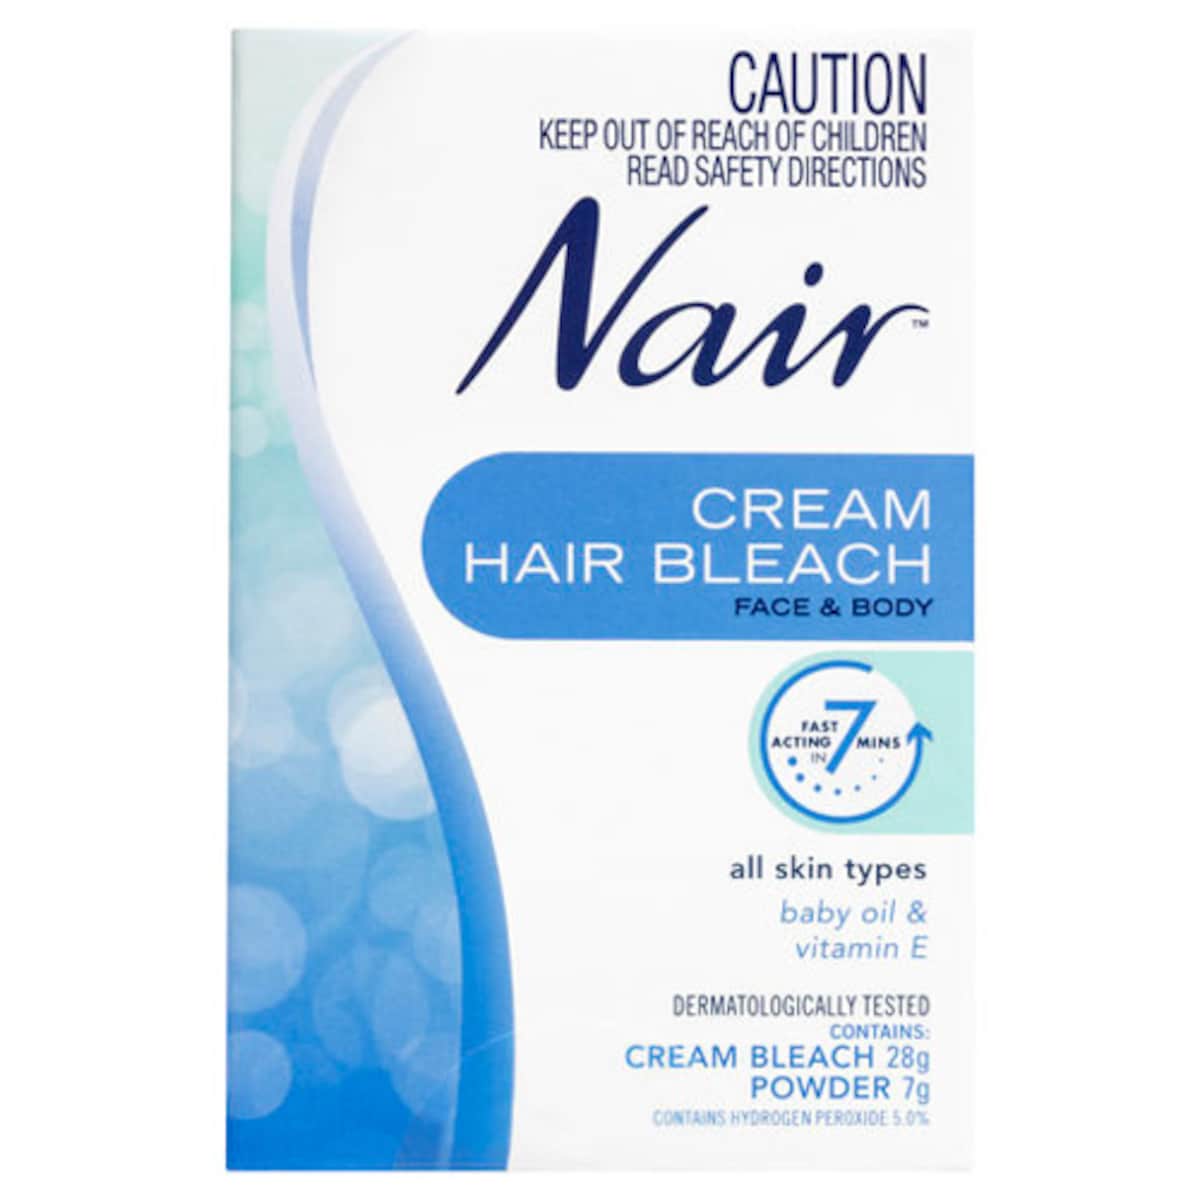 Nair Cream Hair Bleach for Face & Body 28g + Powder 7g